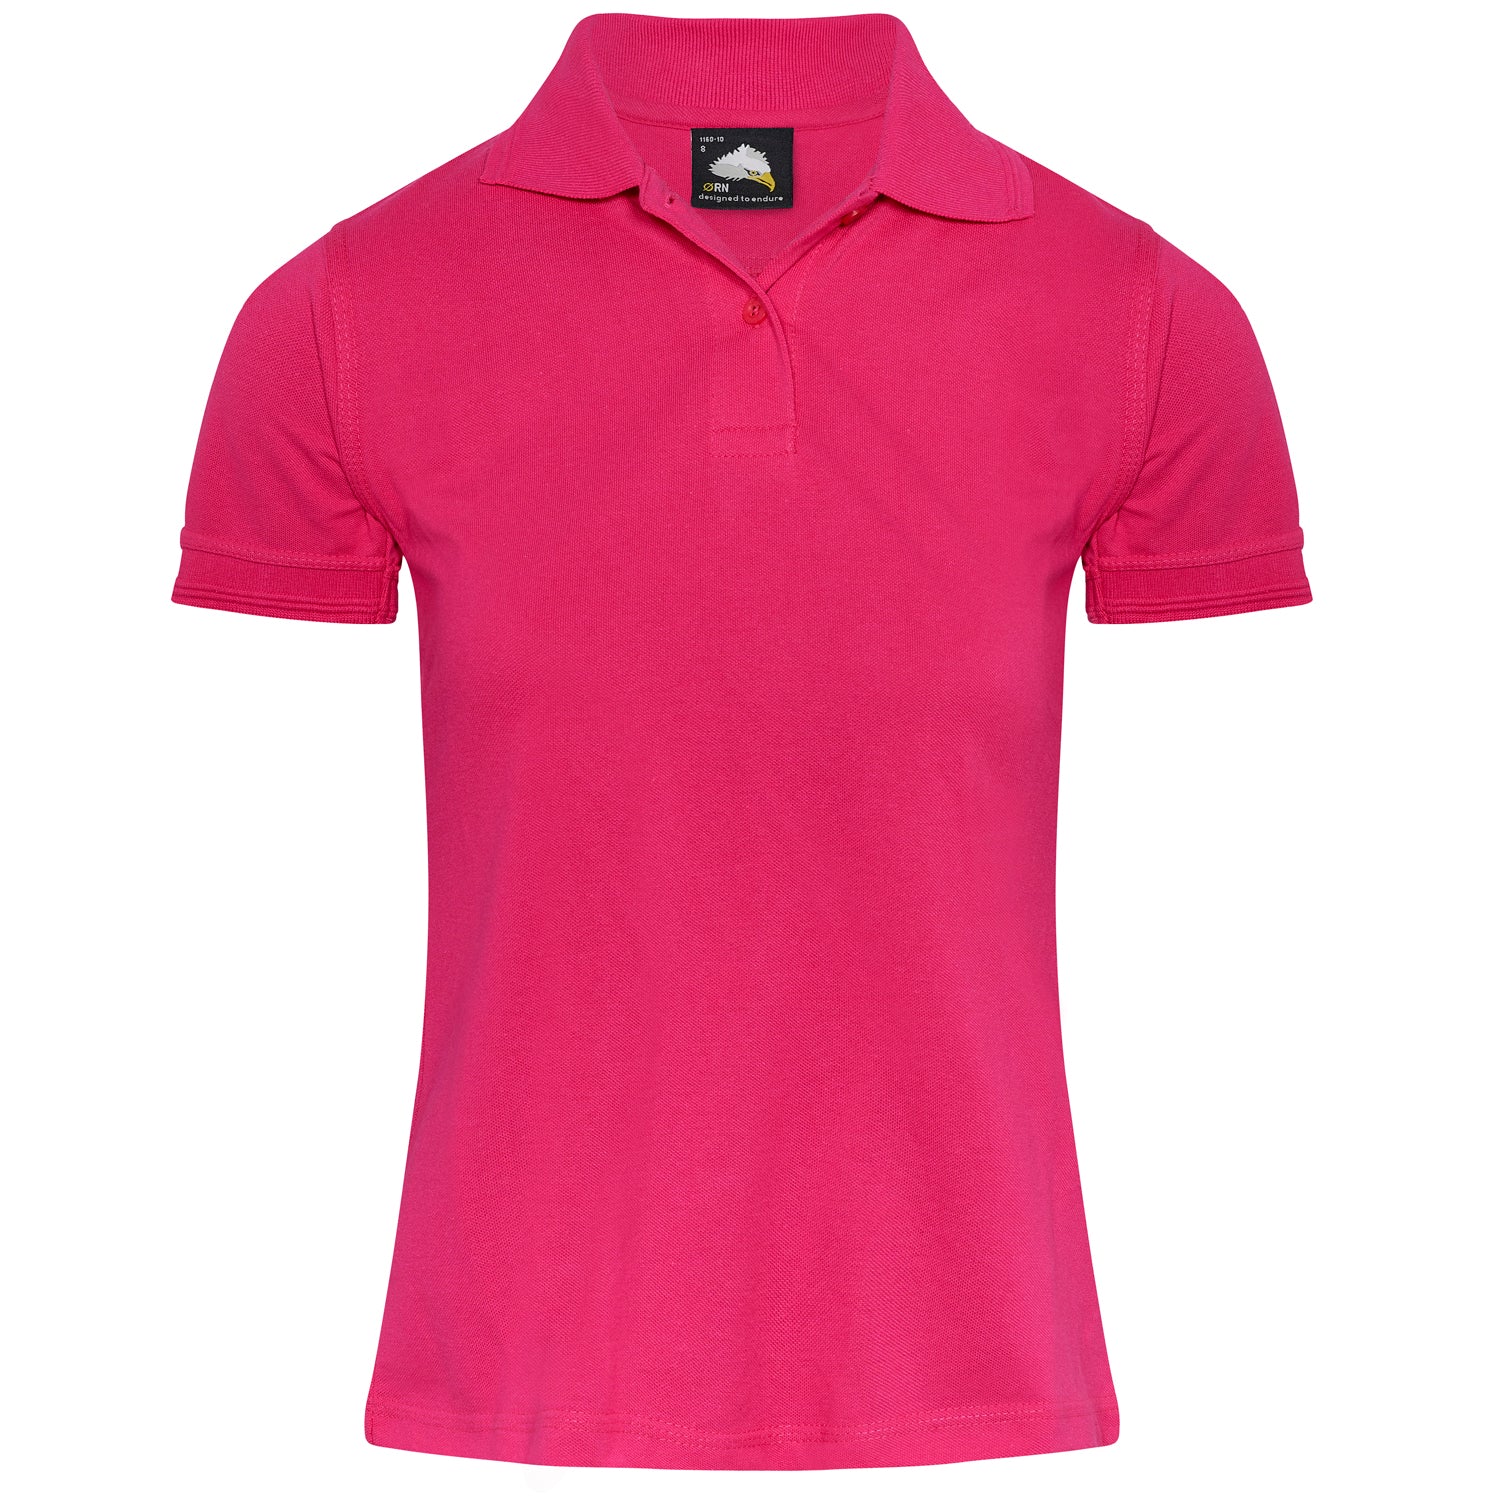 ORN Wren Ladies Poloshirt - Pink